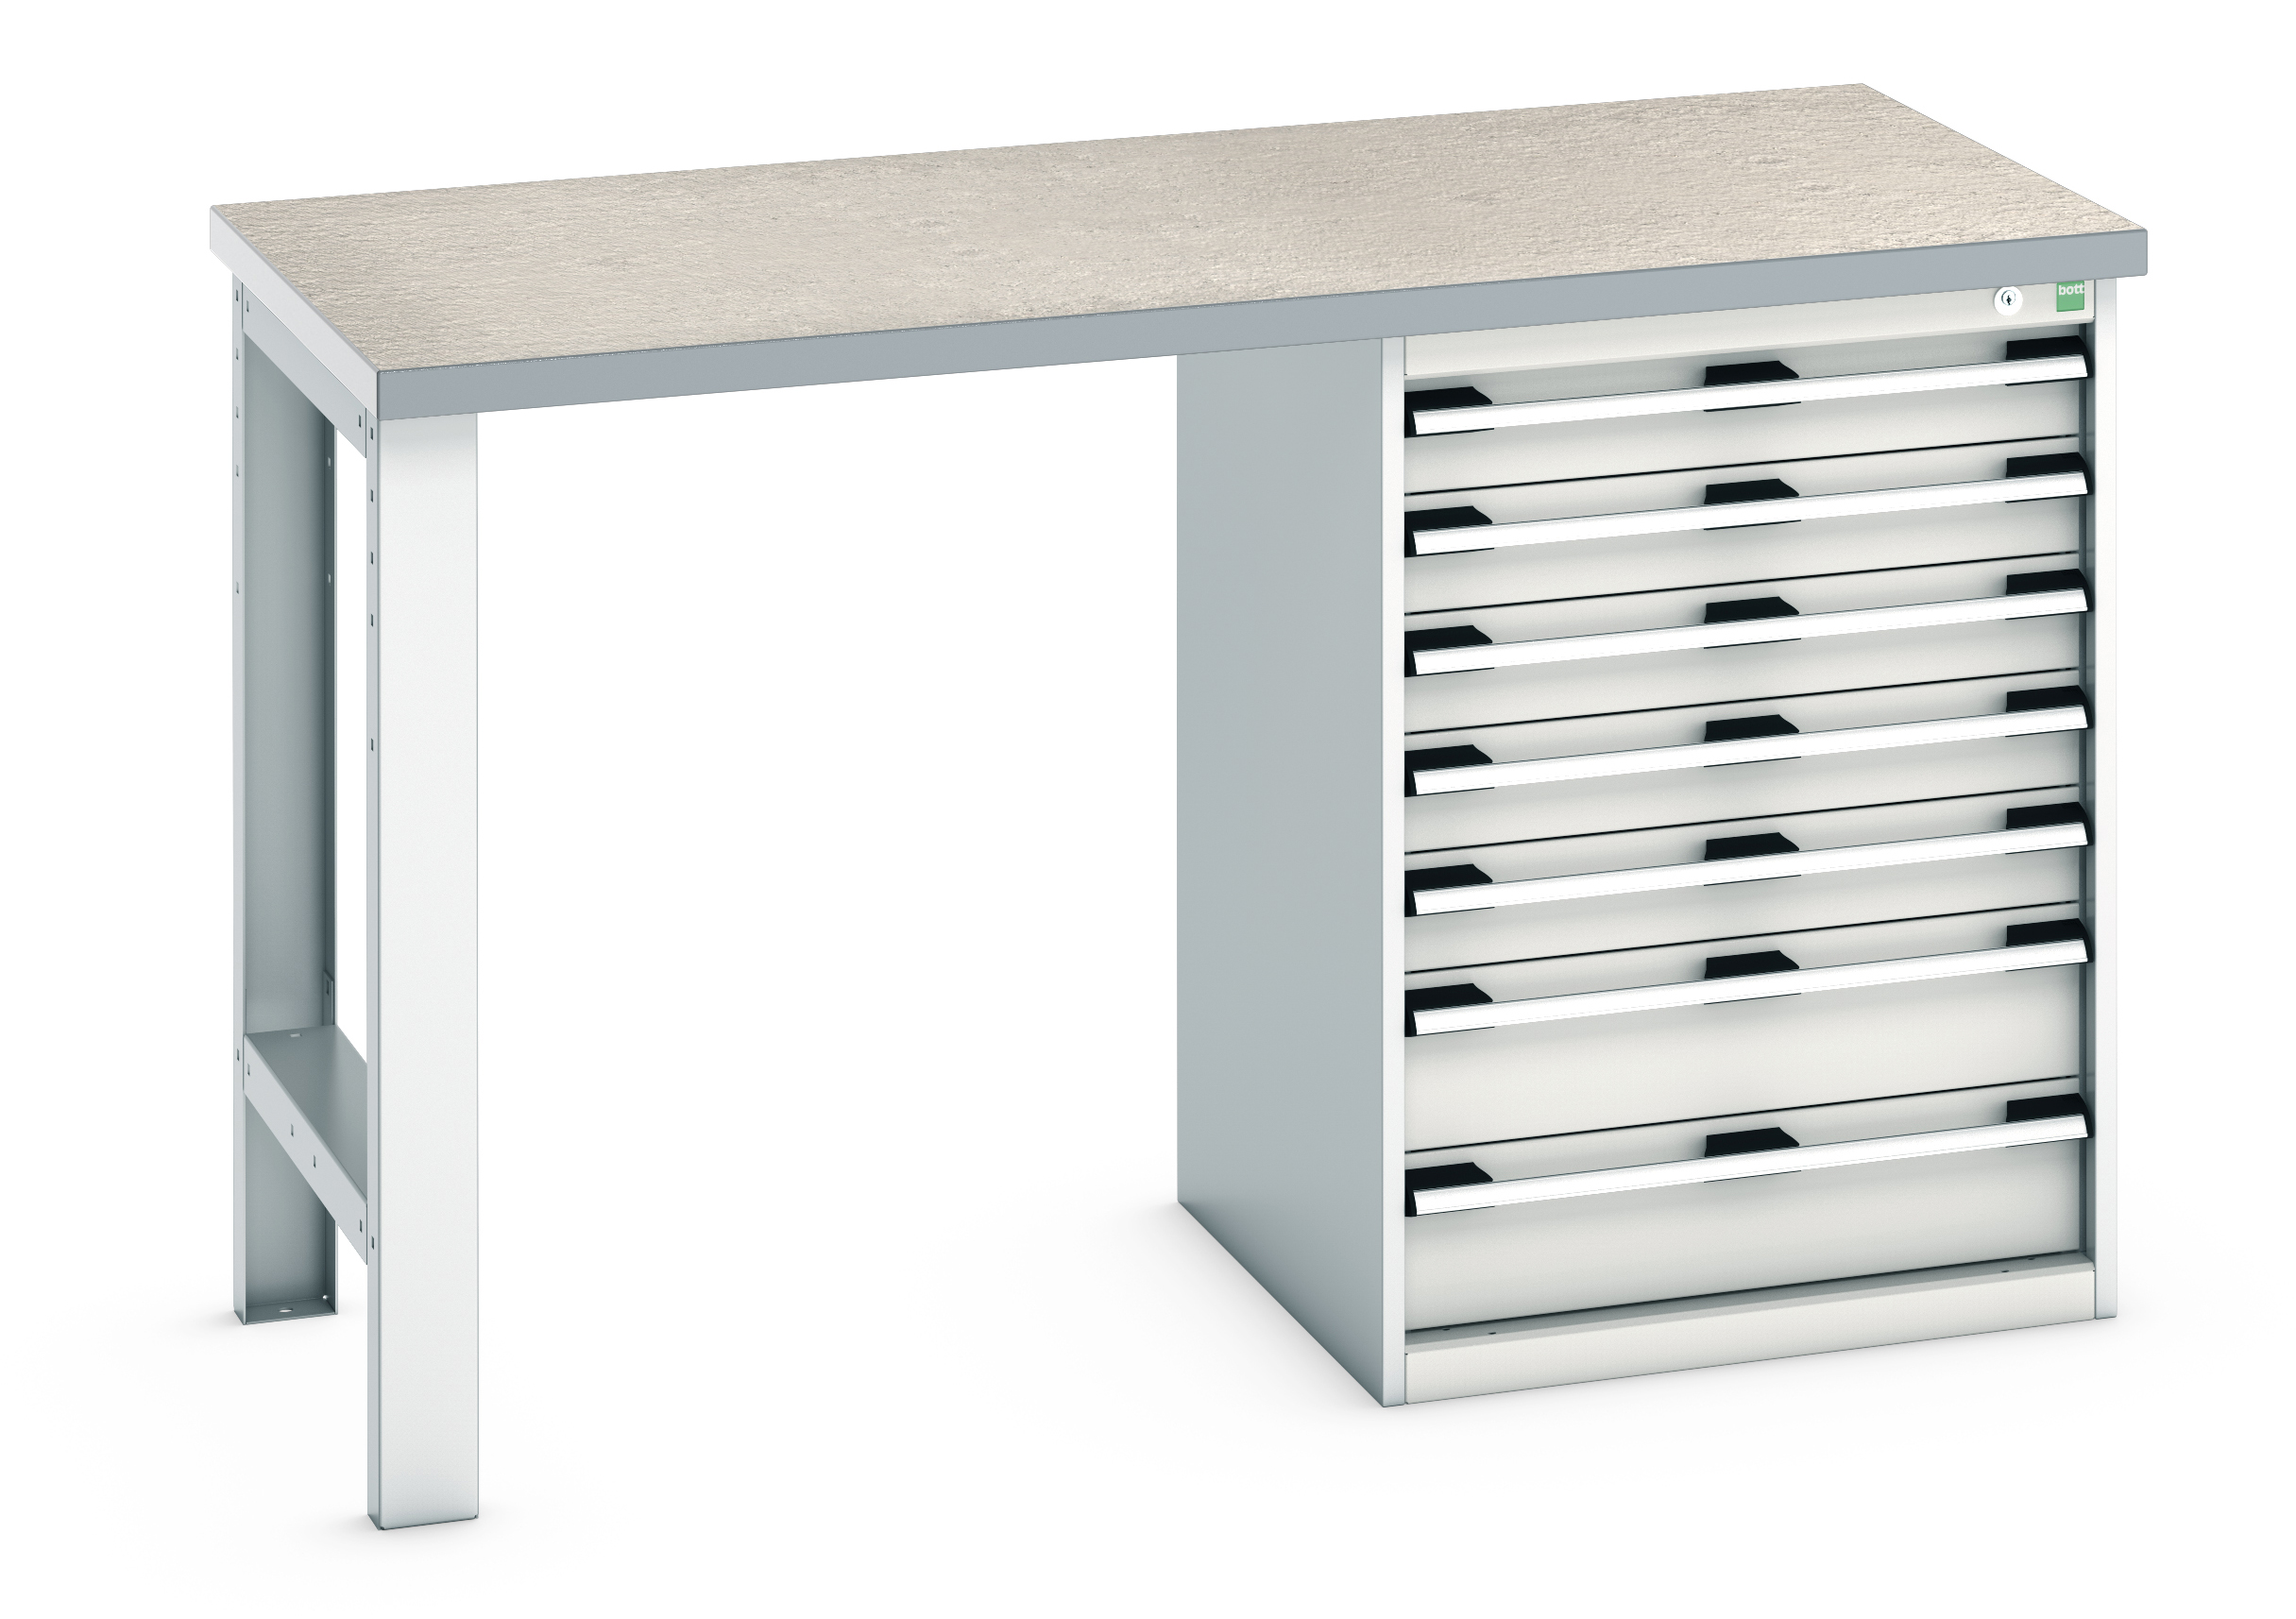 Bott Cubio Pedestal Bench With 7 Drawer Cabinet - 41003497.16V